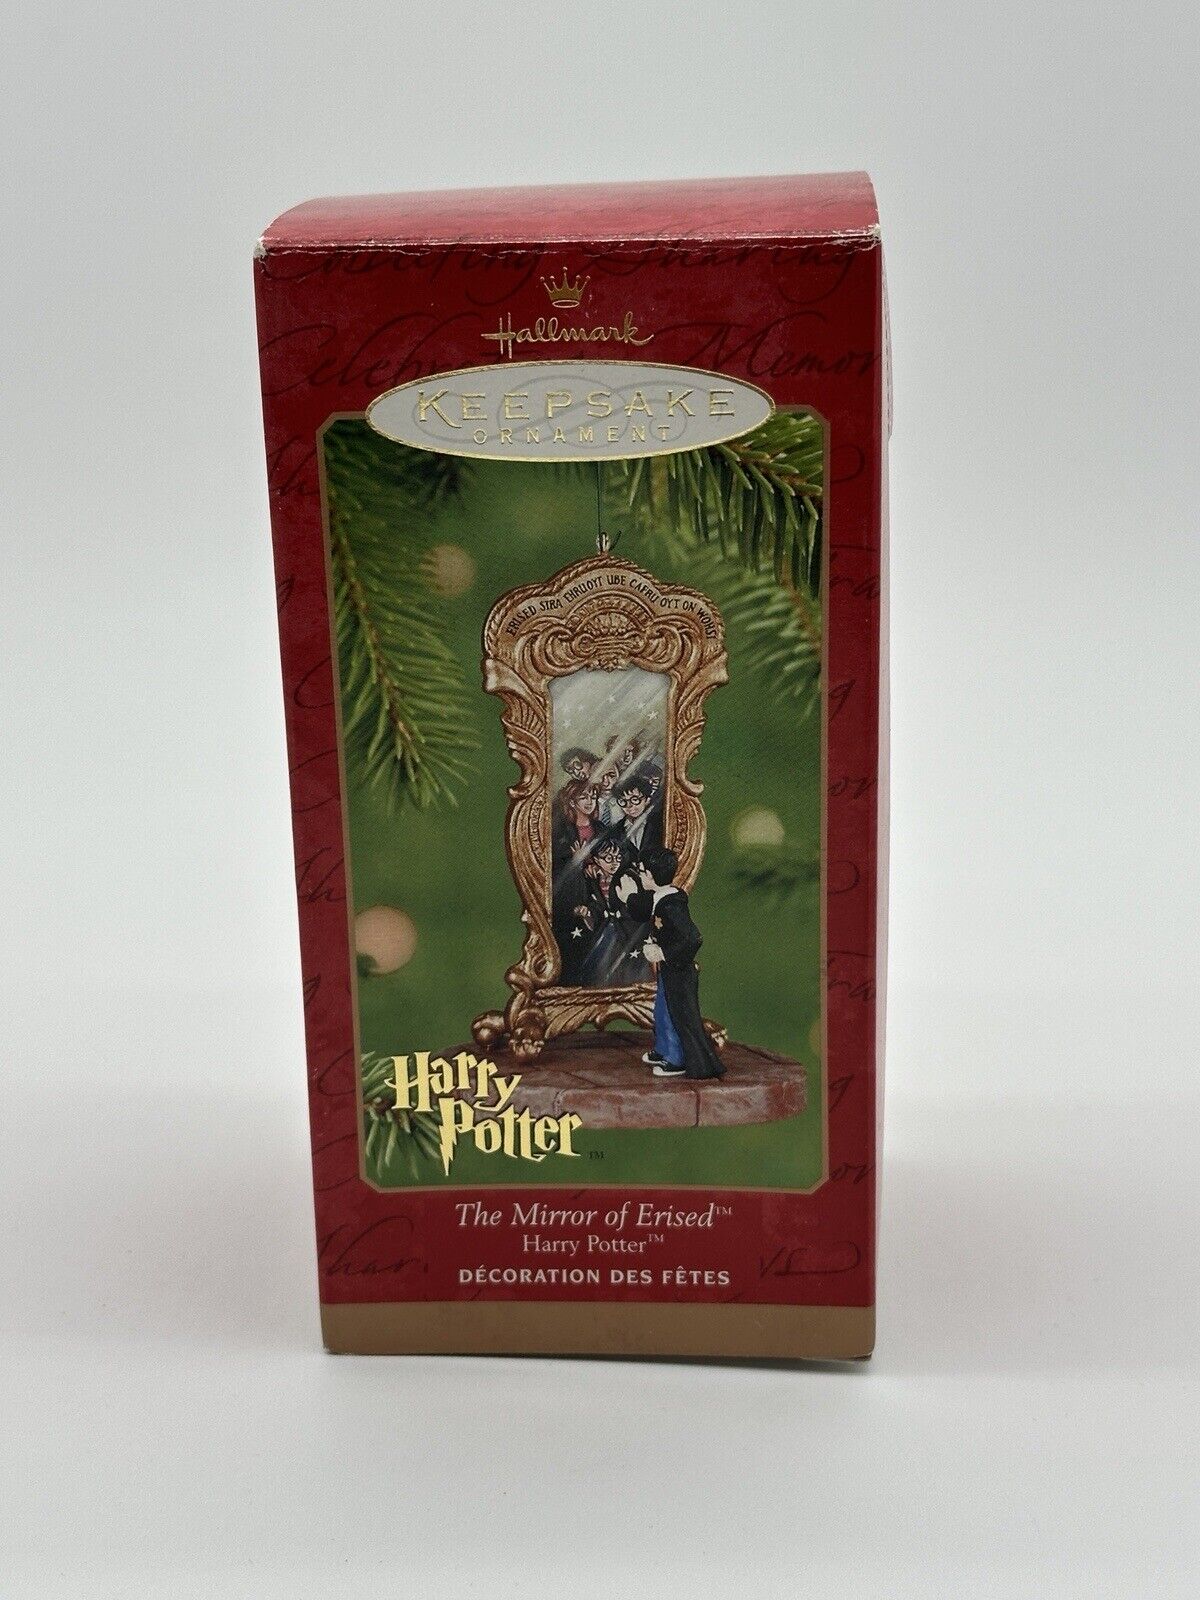 Harry Potter The Mirror of Erised Hallmark Keepsake 2001 Christmas Ornament